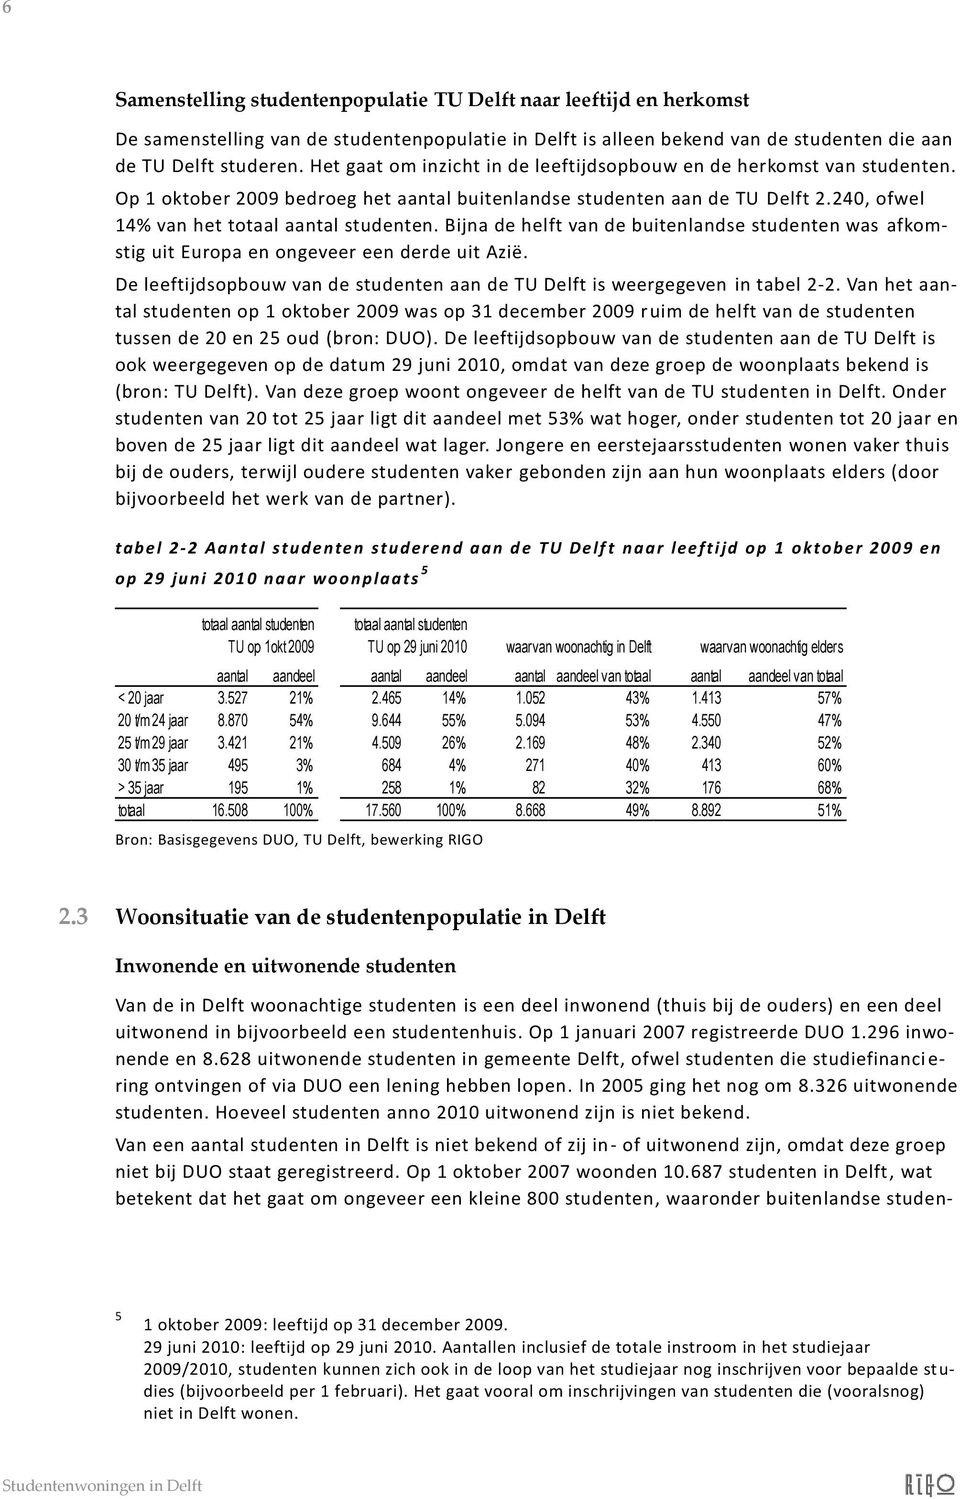 Bijna de helft van de buitenlandse studenten was afkomstig uit Europa en ongeveer een derde uit Azië. De leeftijdsopbouw van de studenten aan de TU Delft is weergegeven in tabel 2-2.